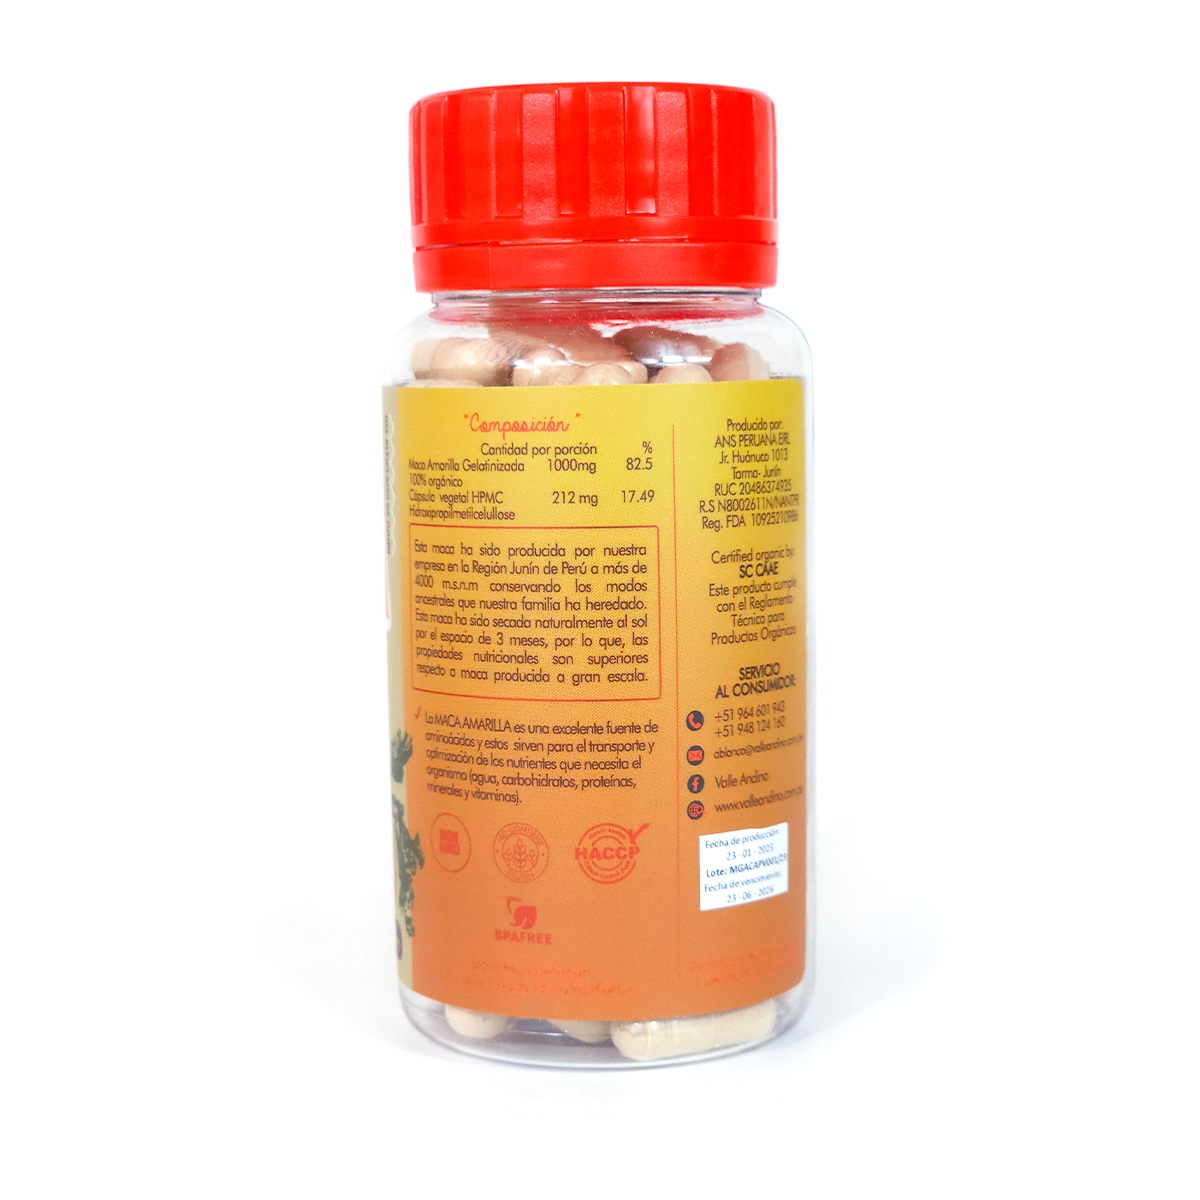 Organic Yellow Maca in capsules x 100 units